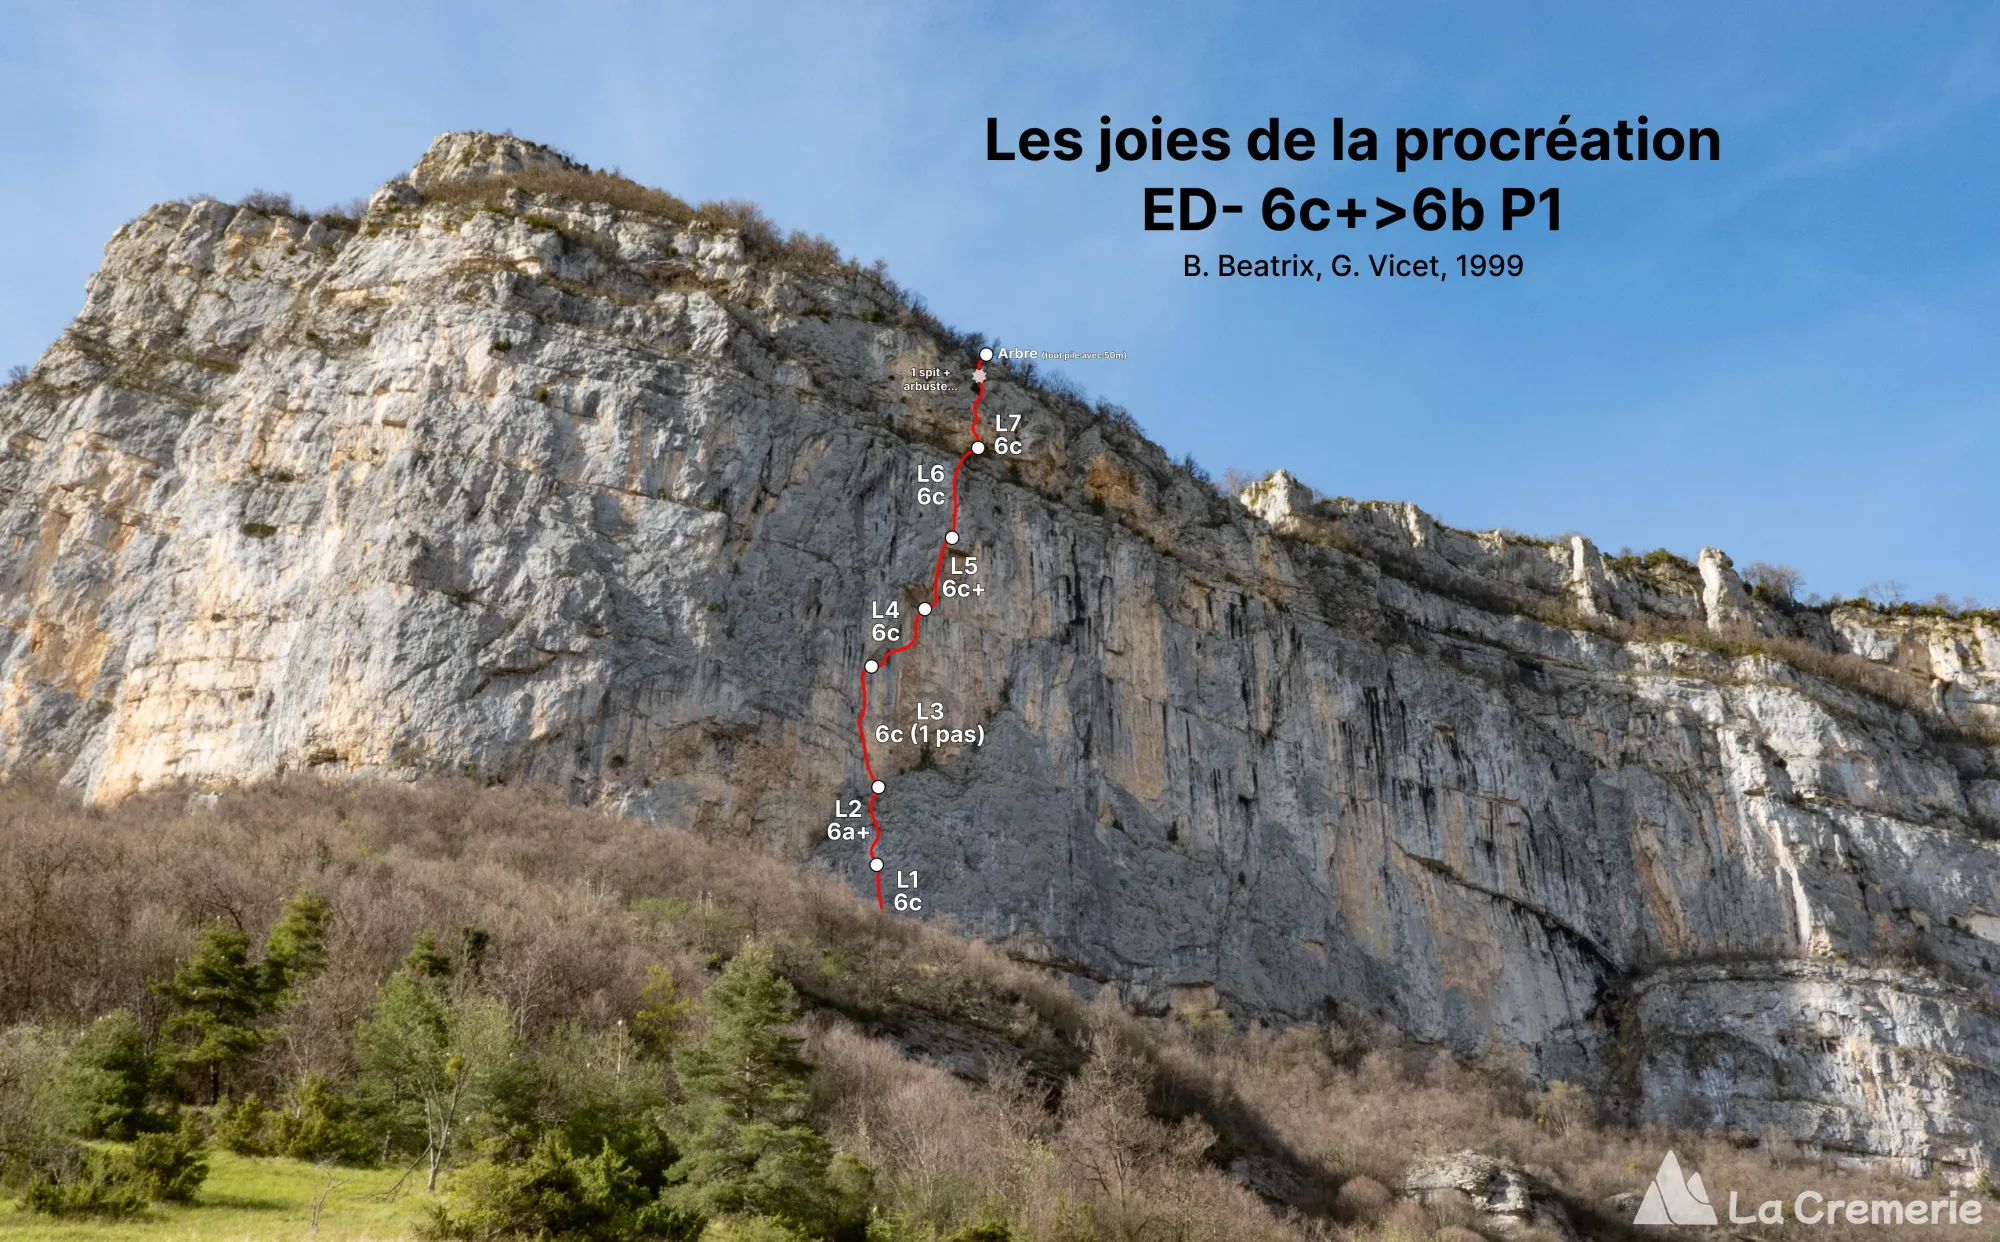 Tracé estimatif de la grande voie Les joies de la procréation ED- 6c+>6b P1 à Presles dans le Vercors